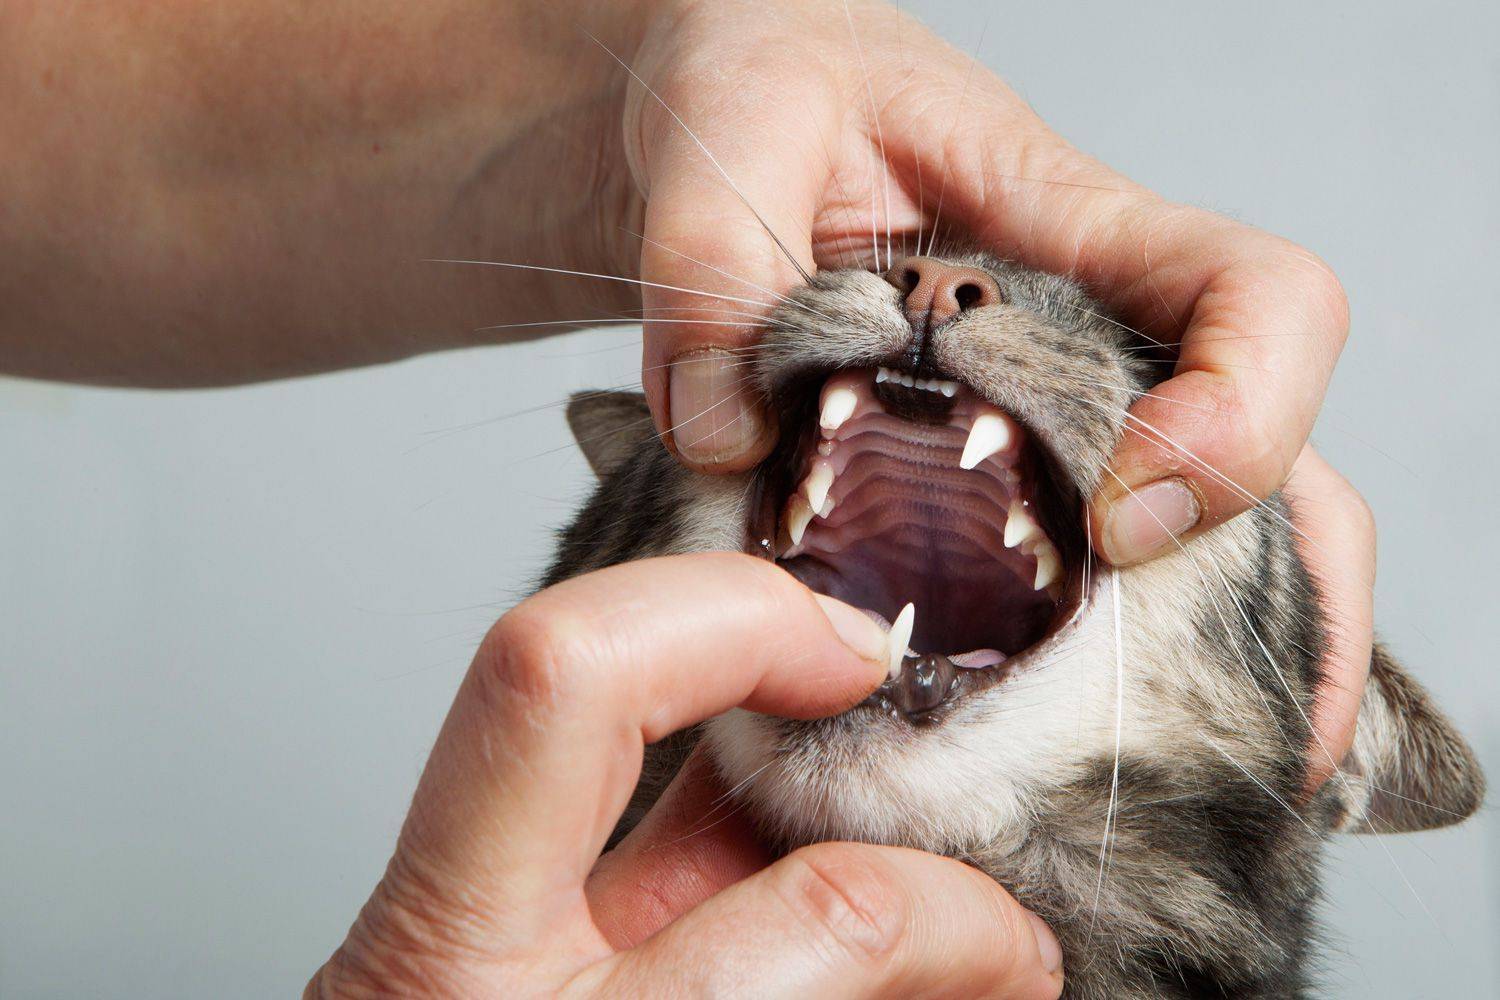 Кровь в моче у кошки: что делать, причины и лечение